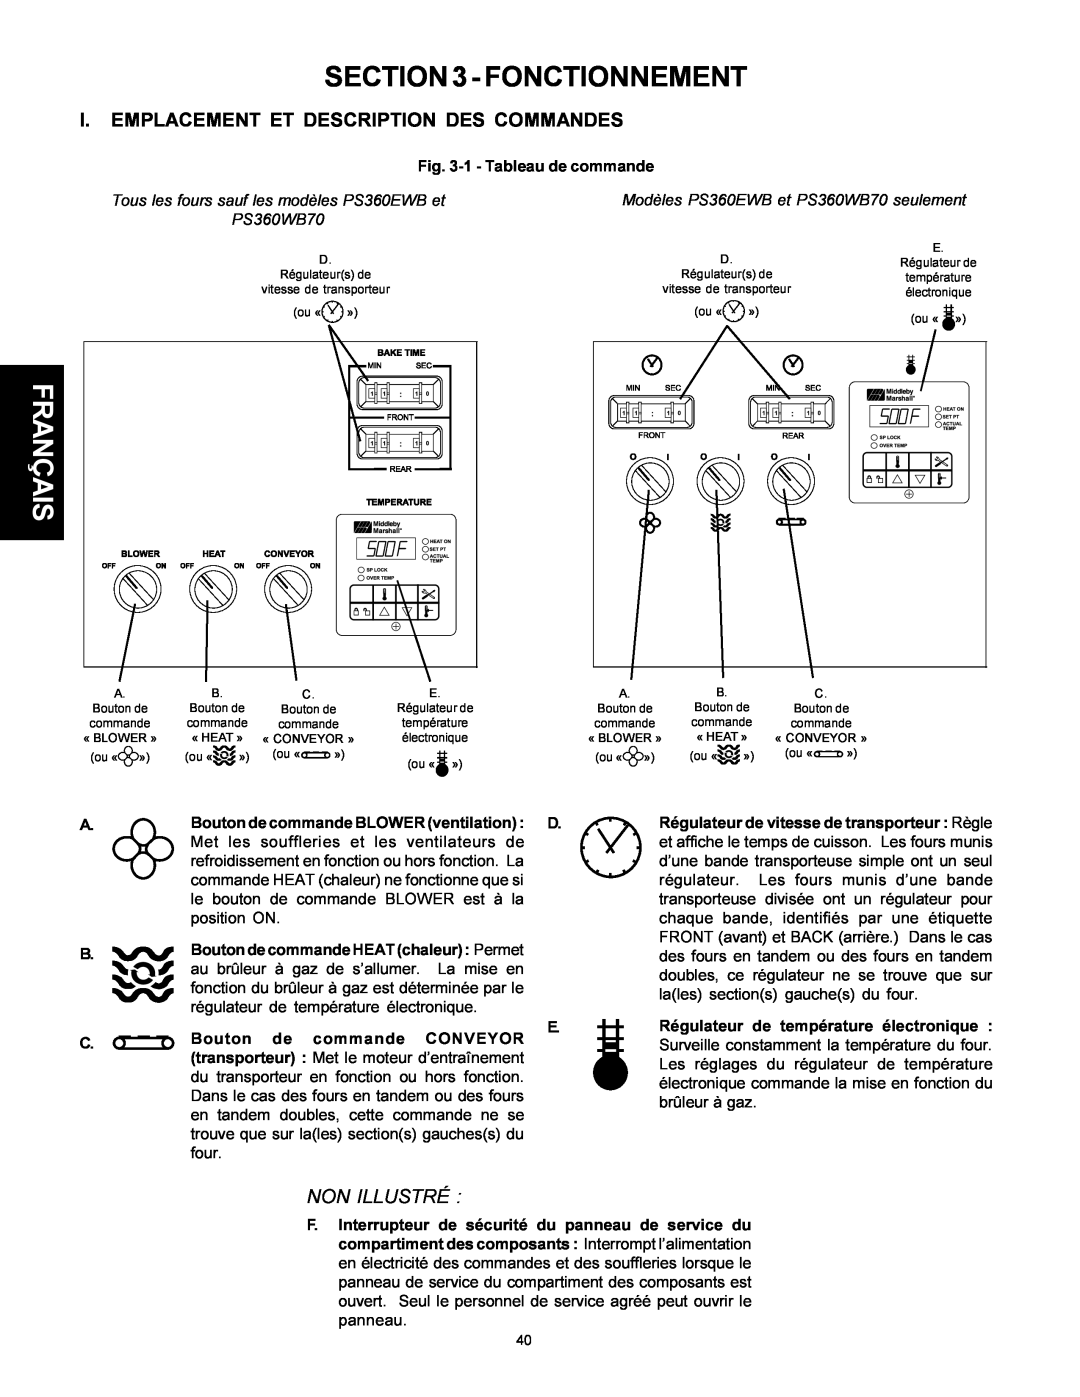 Middleby Marshall PS310 Fonctionnement, Français, I. Emplacement Et Description Des Commandes, Non Illustré, PS360WB70 